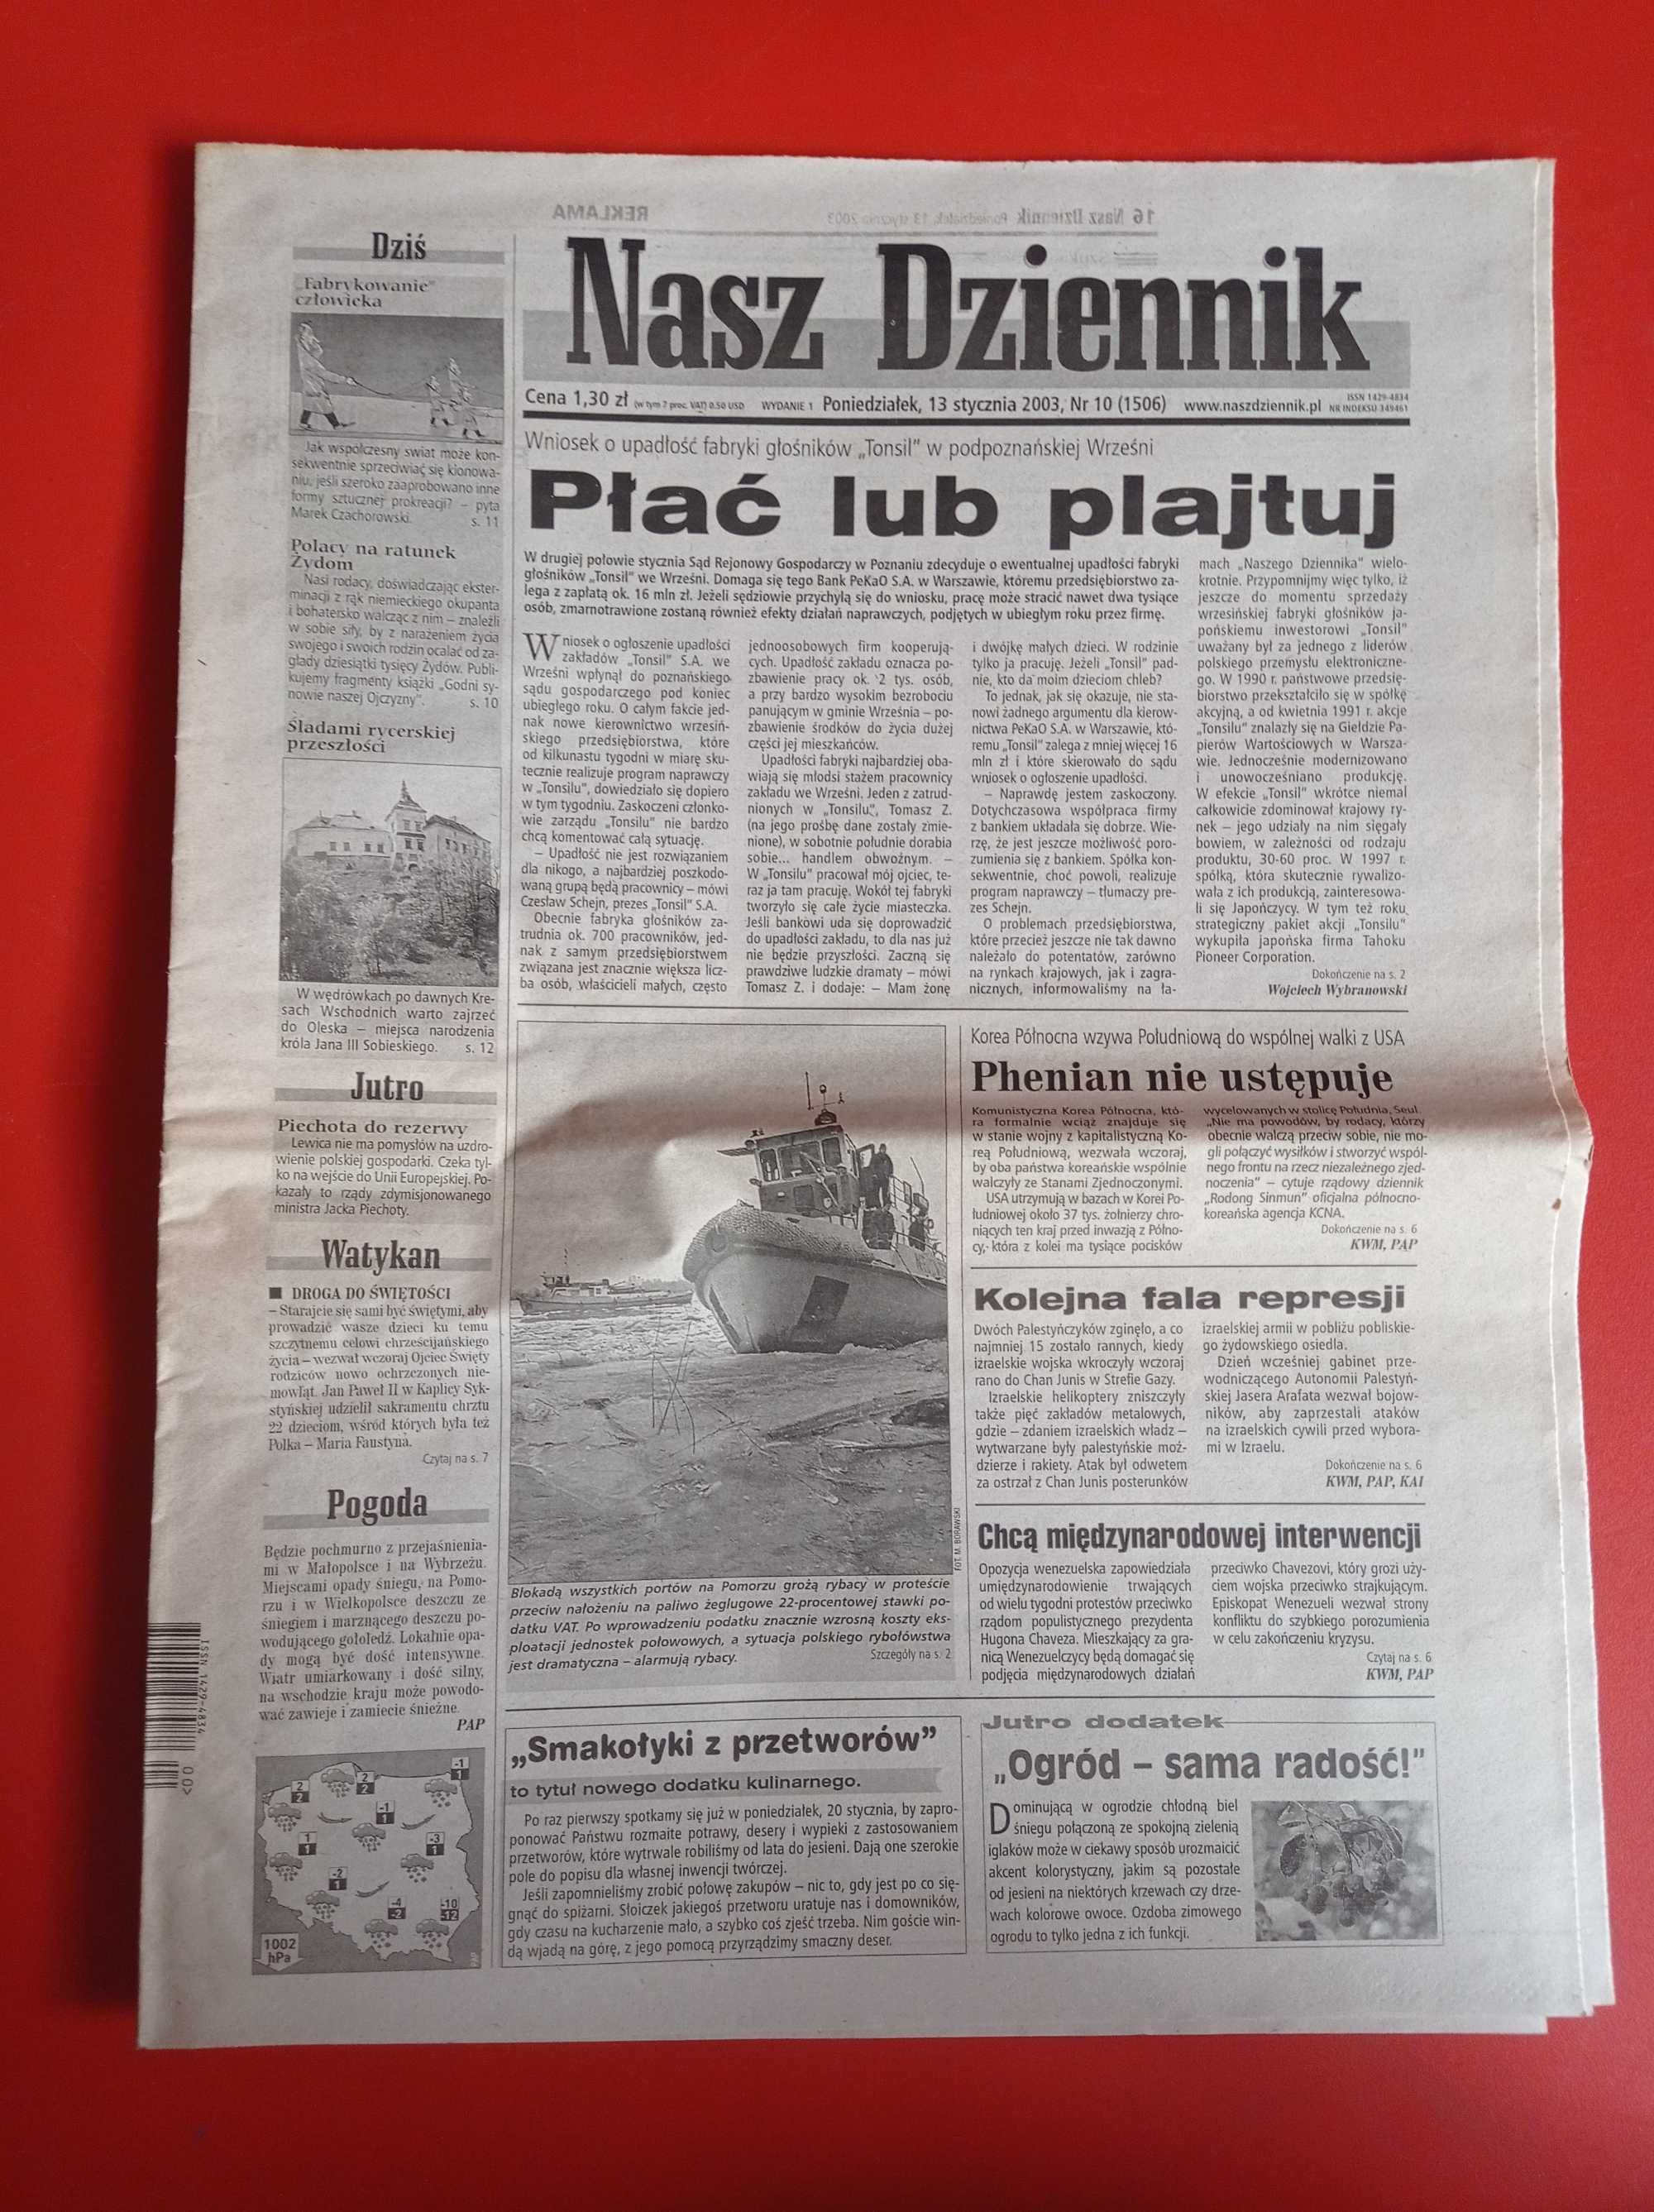 Nasz Dziennik, nr 10/2003, 13 stycznia 2003